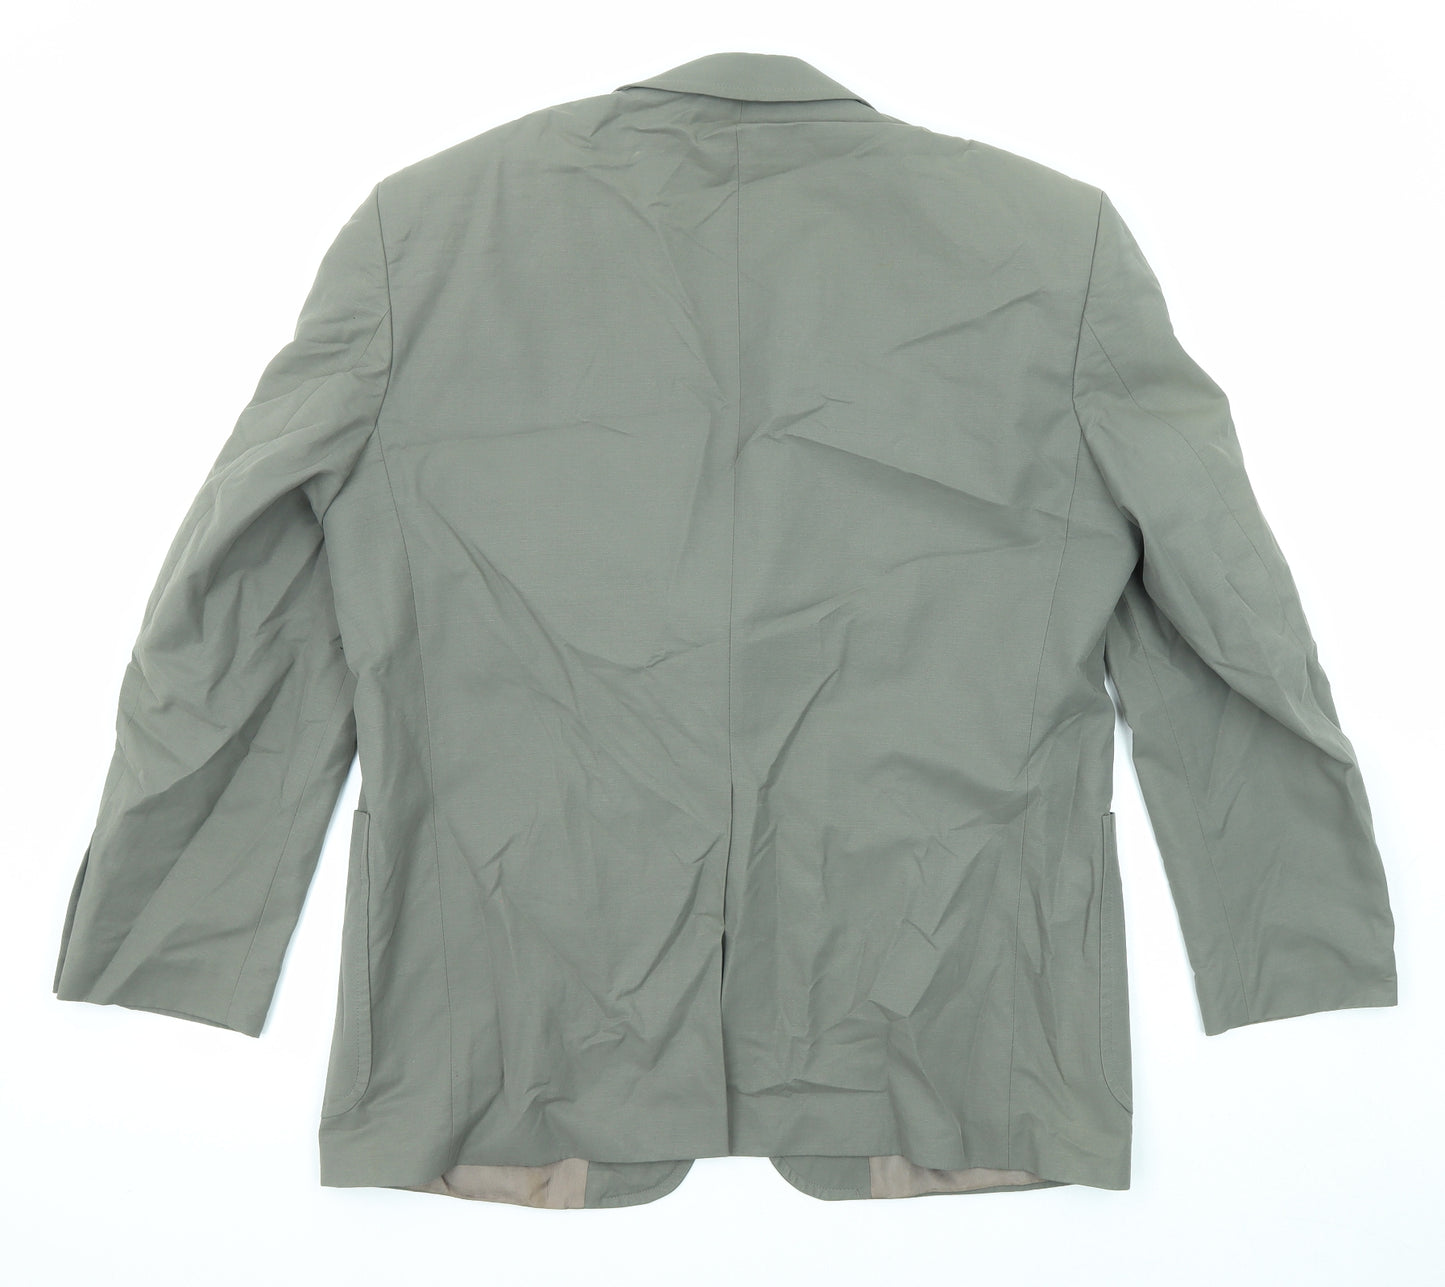 Marks and Spencer Mens Green Cotton Jacket Suit Jacket Size 42 Regular